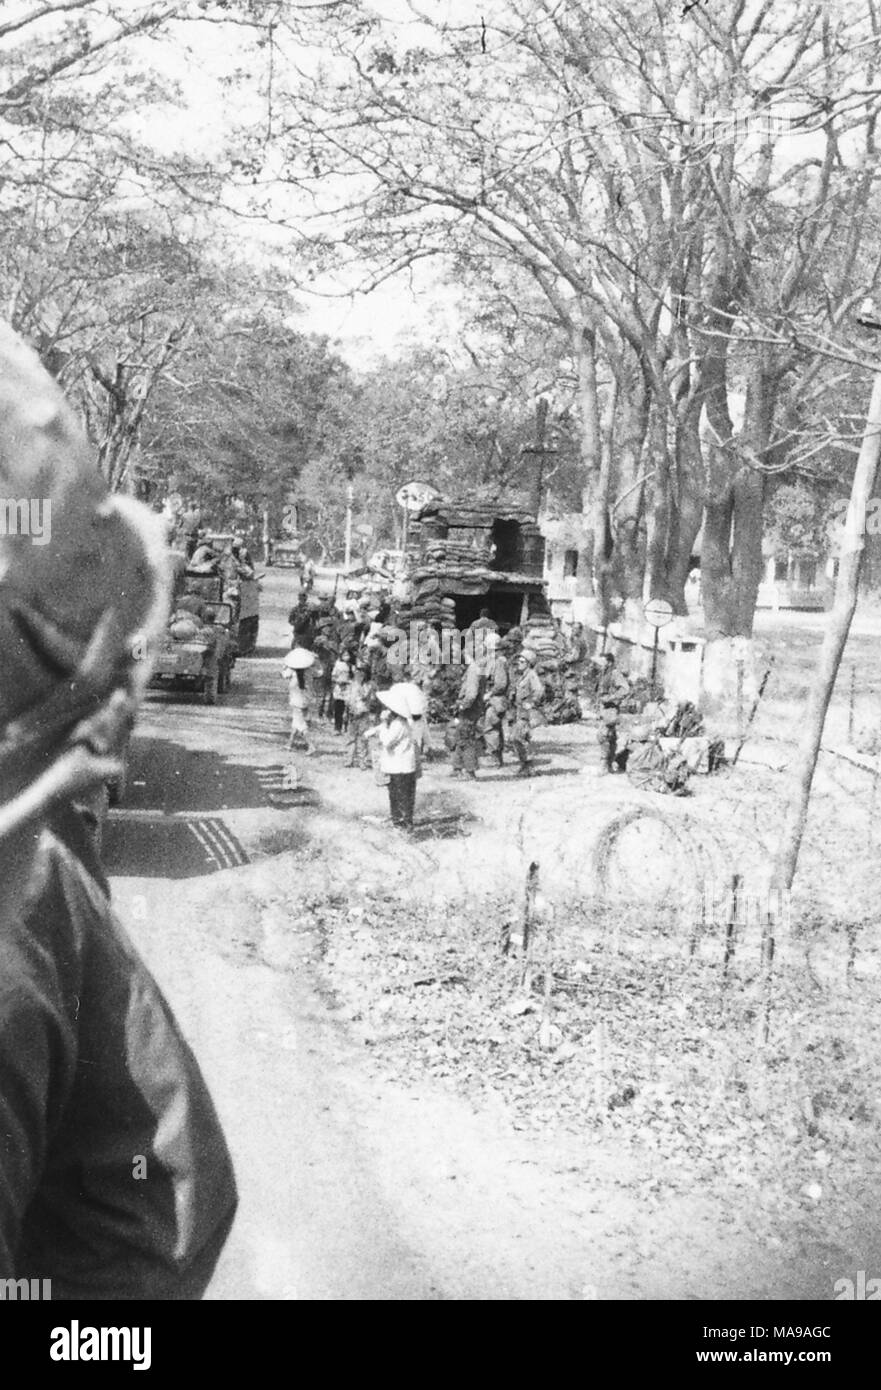 Schwarz-weiß Foto, zeigt sowohl die uniformierte Soldaten und vietnamesische Volk in ziviler Kleidung, Stehen, Gehen und Reiten in Lastwagen, vorbei an einem sandsack Bunker, in einem Gebiet mit vielen Bäumen, die in Vietnam während des Vietnam Krieges fotografiert (1955-1975), 1971. () Stockfoto